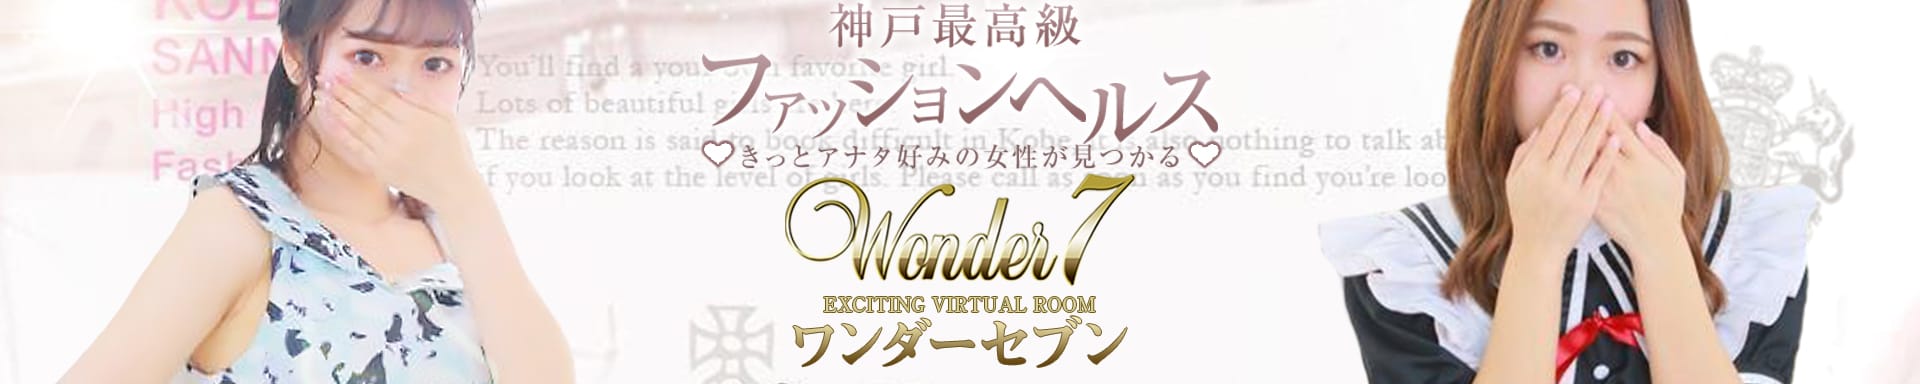 Wonder7 (ワンダー7) その2